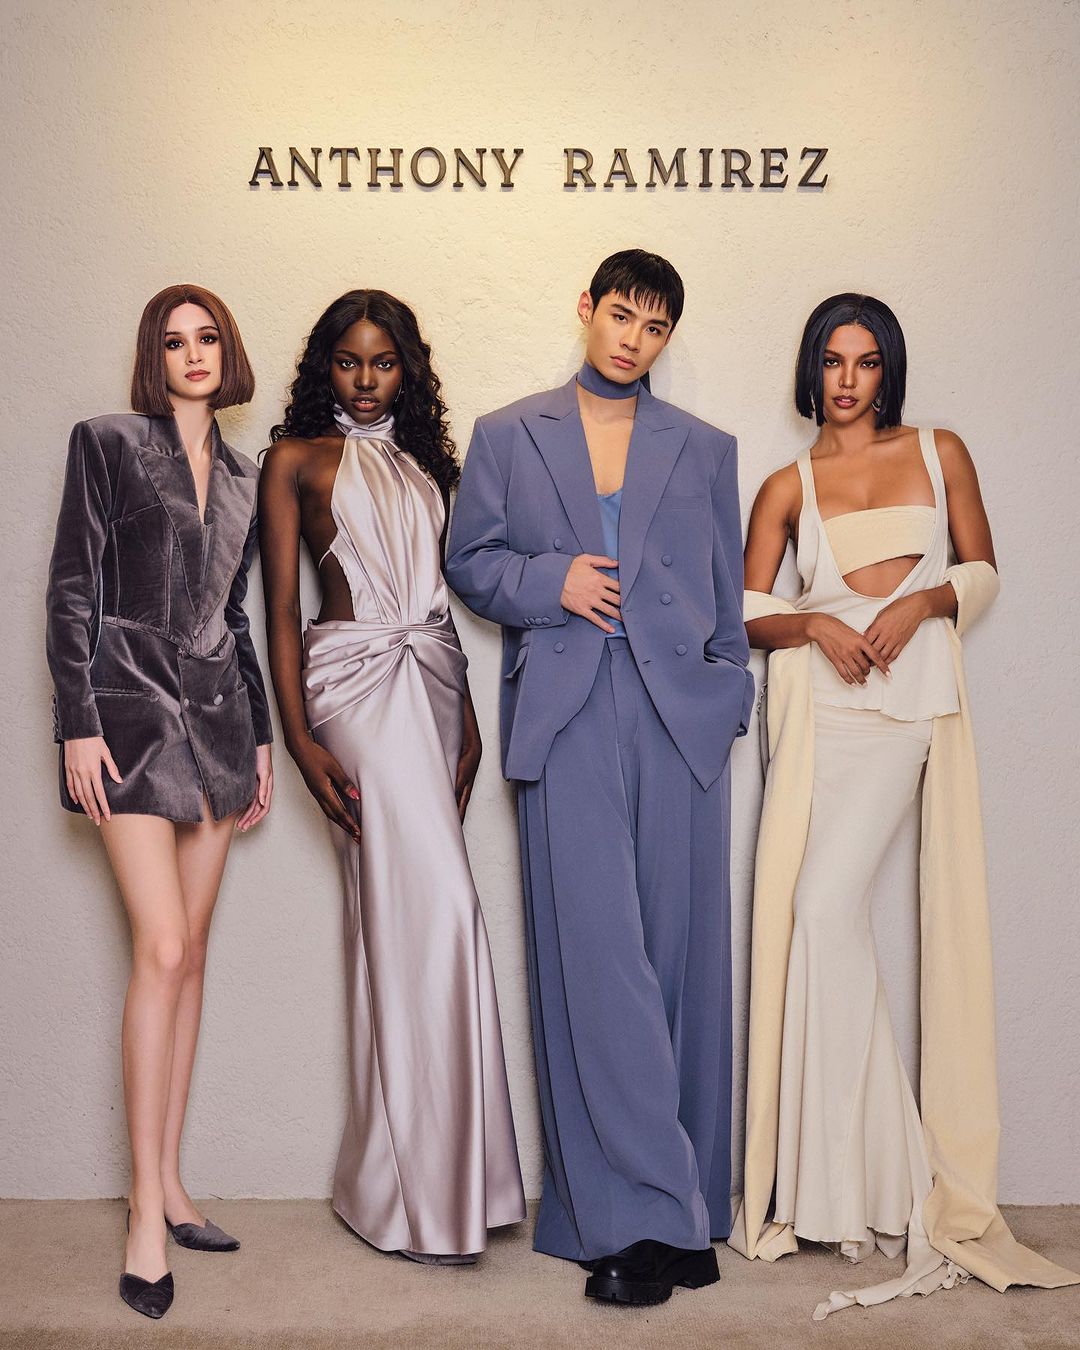 Anthony Ramirez's Symphony of Feelings showcased intricate details and feminine elements